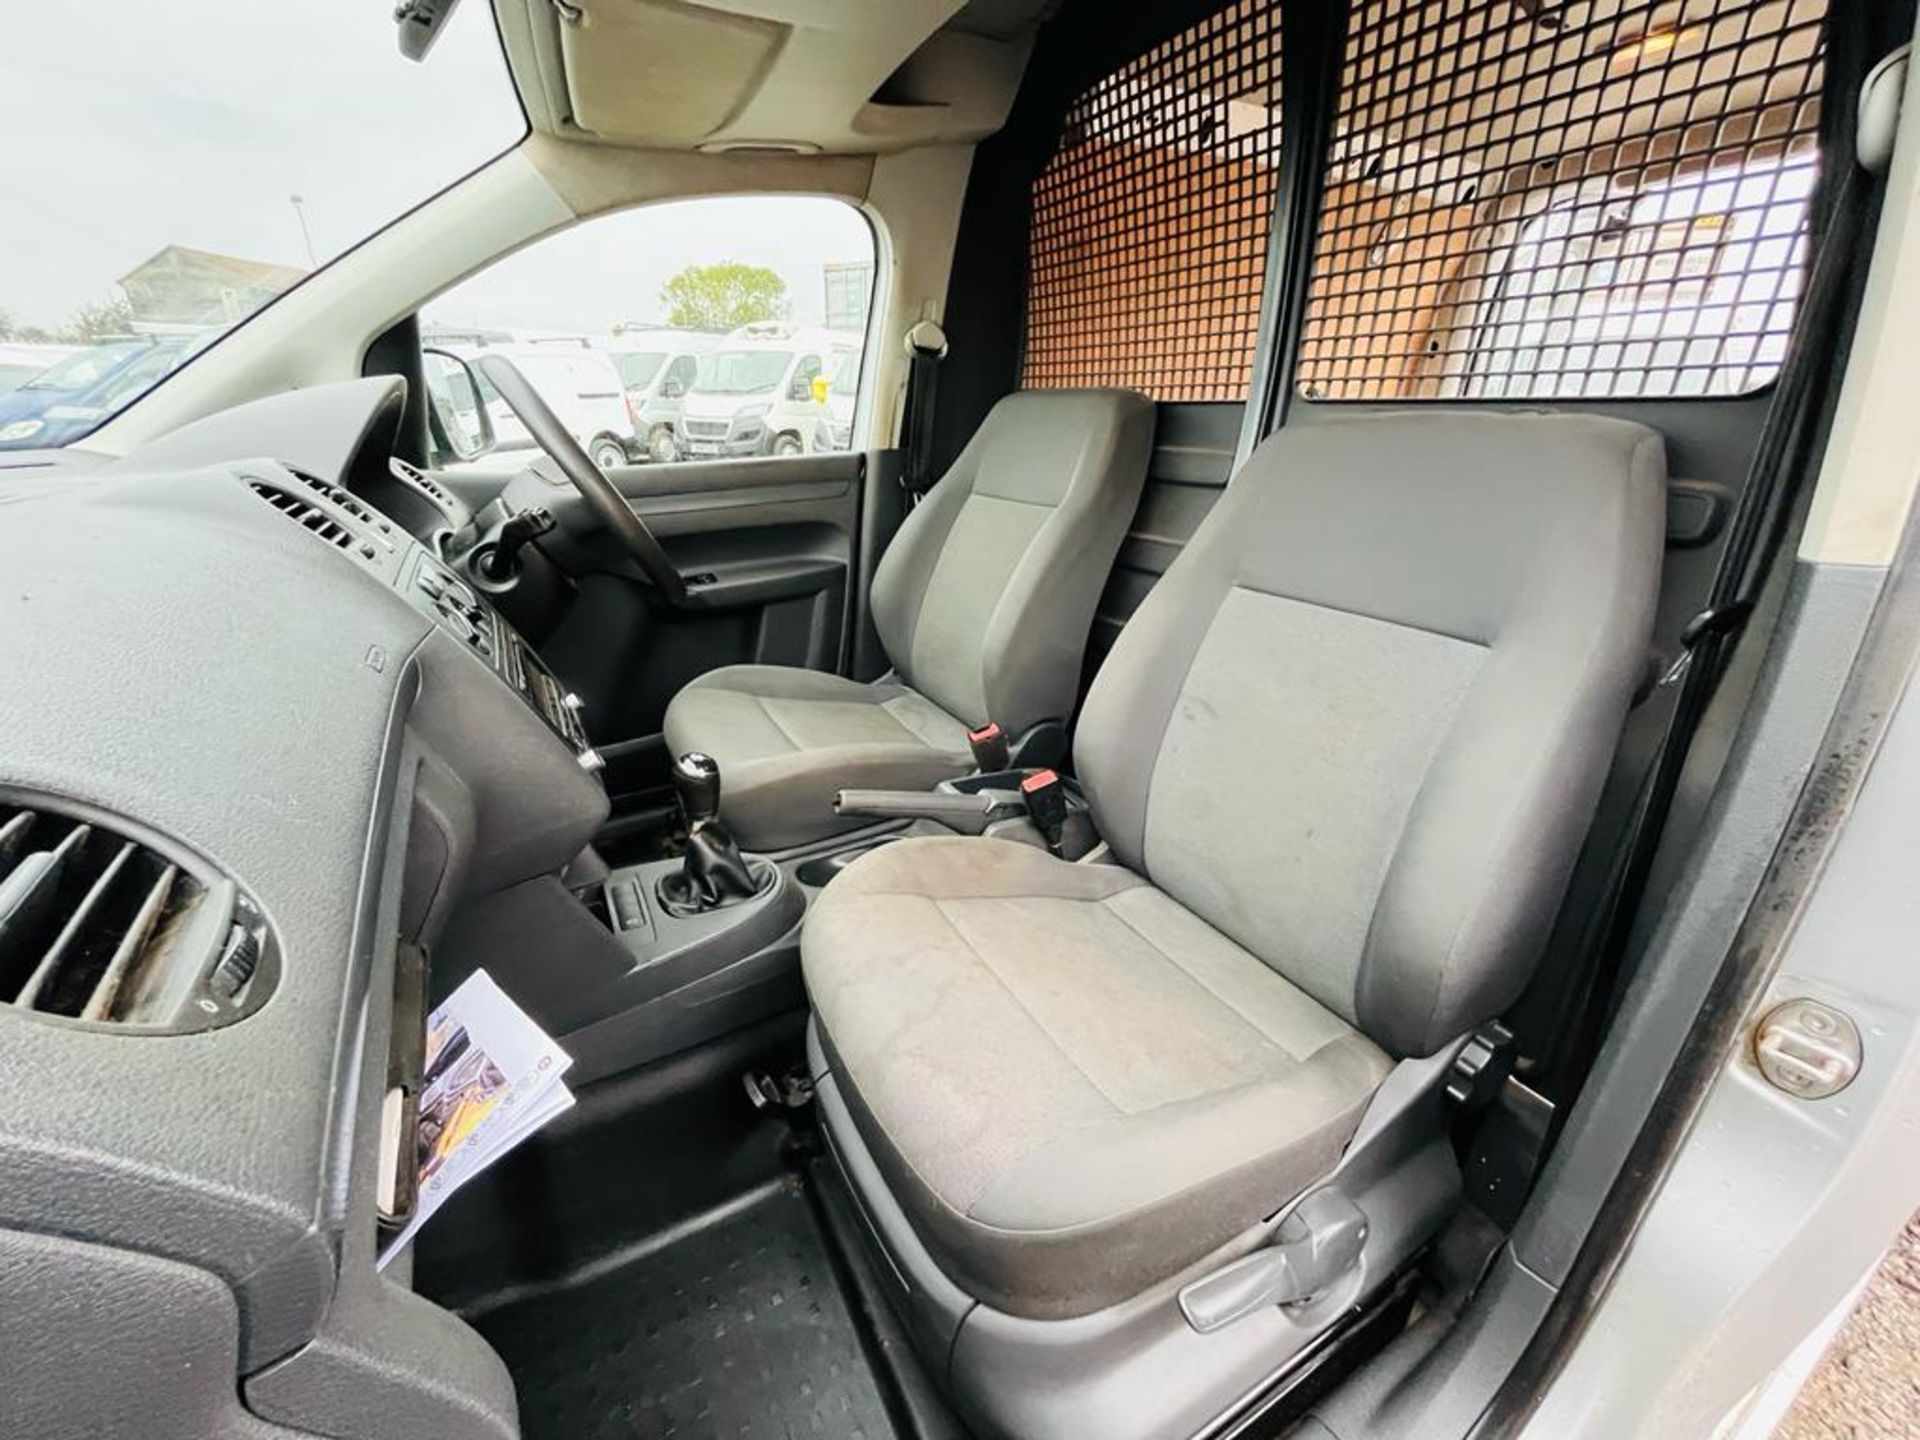 Volkswagon Caddy C20 1.6 TDI 102 Trendline Van 2015 '15 Reg' - Panel Van - Image 24 of 27